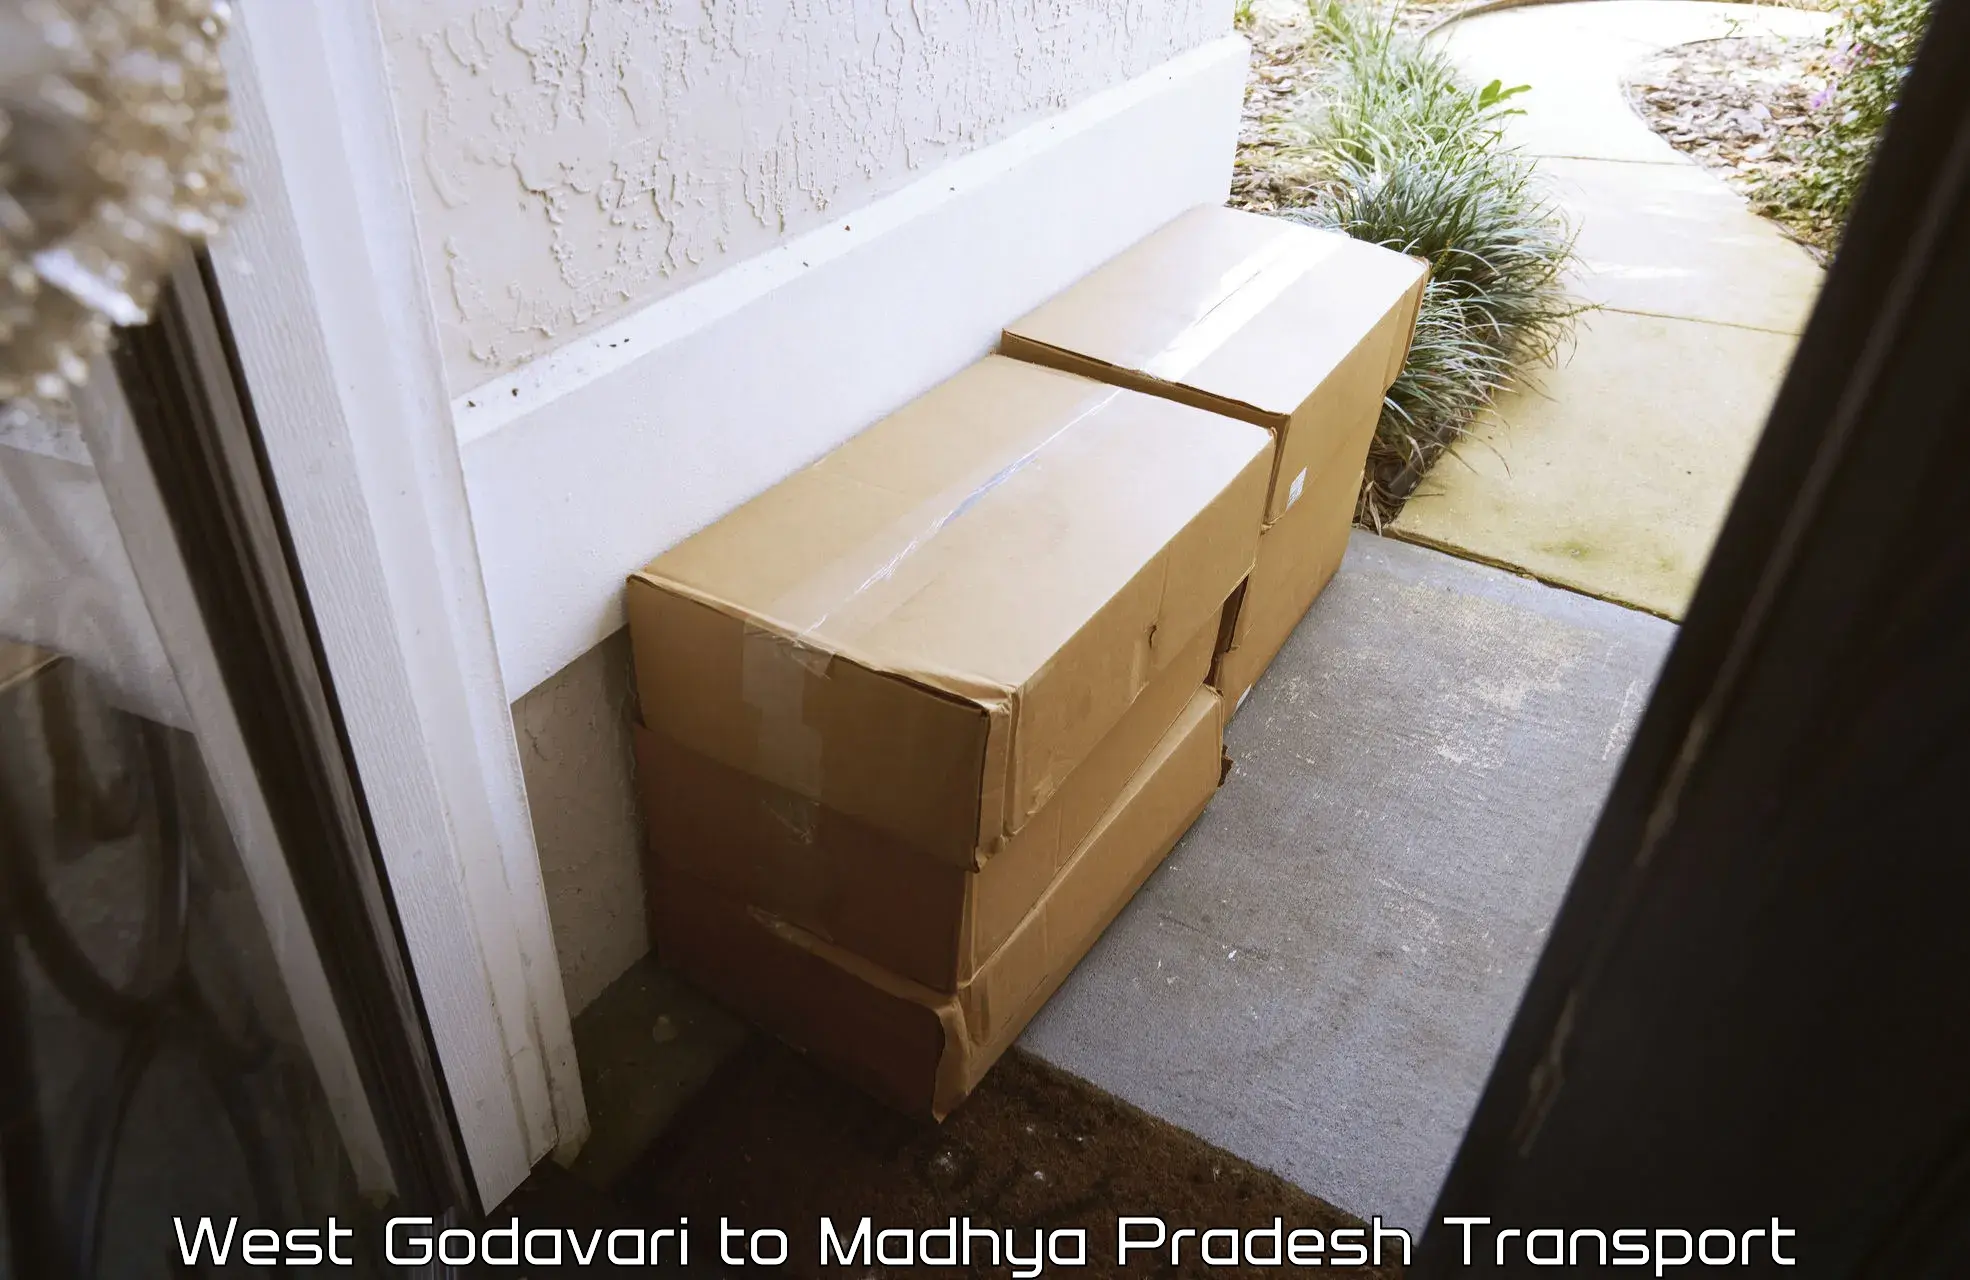 Truck transport companies in India West Godavari to Madhya Pradesh